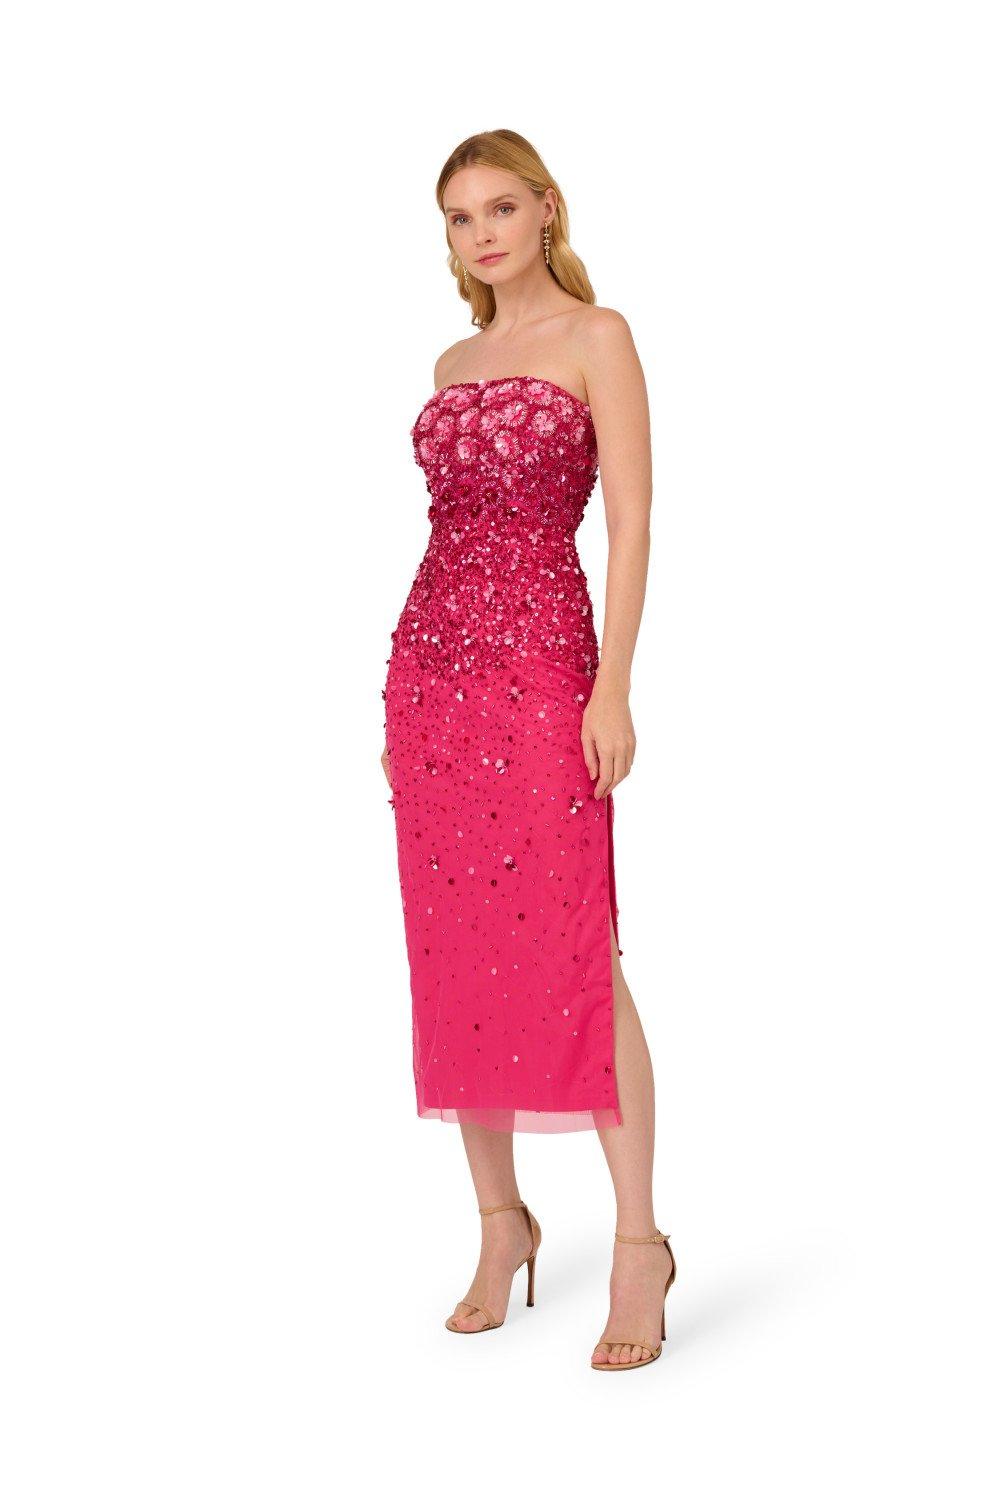 Расшитое бисером платье без бретелек Adrianna Papell, розовый платье bershka с бисером 44 размер